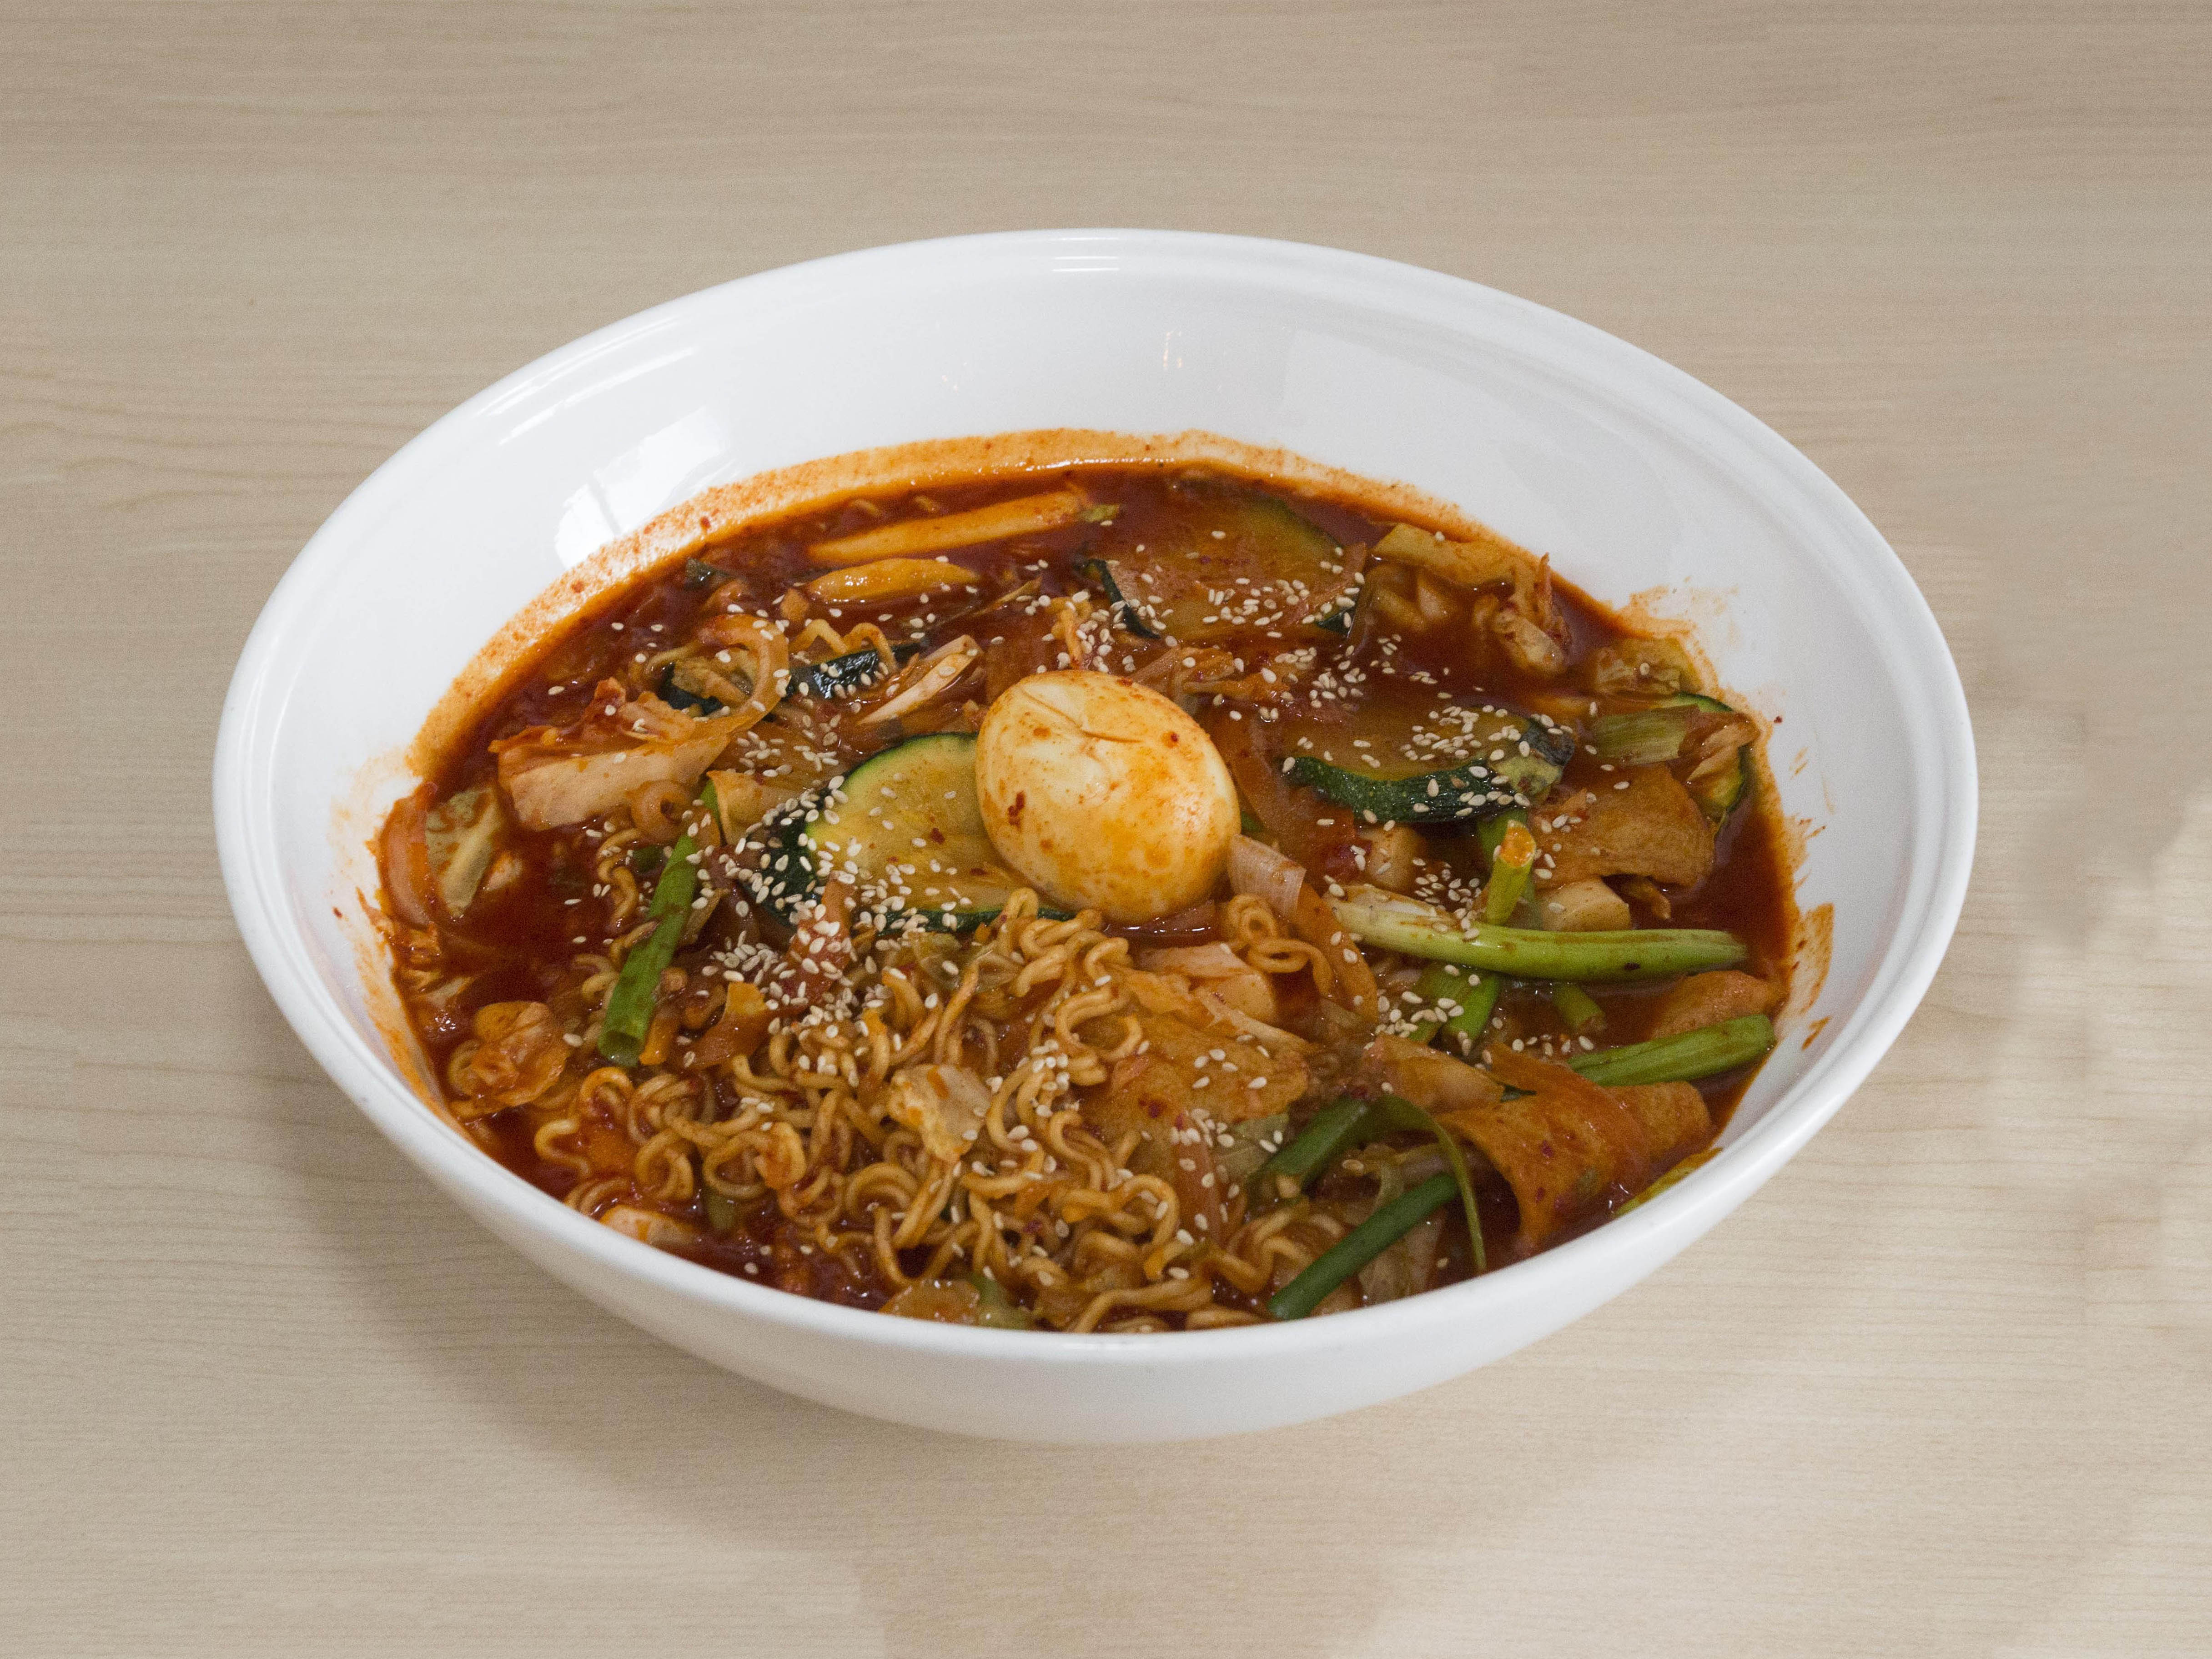 Order 49. Ddukk Bbokki Og Korean Street Style food online from Cafe Gunul 2 store, Rowland Heights on bringmethat.com